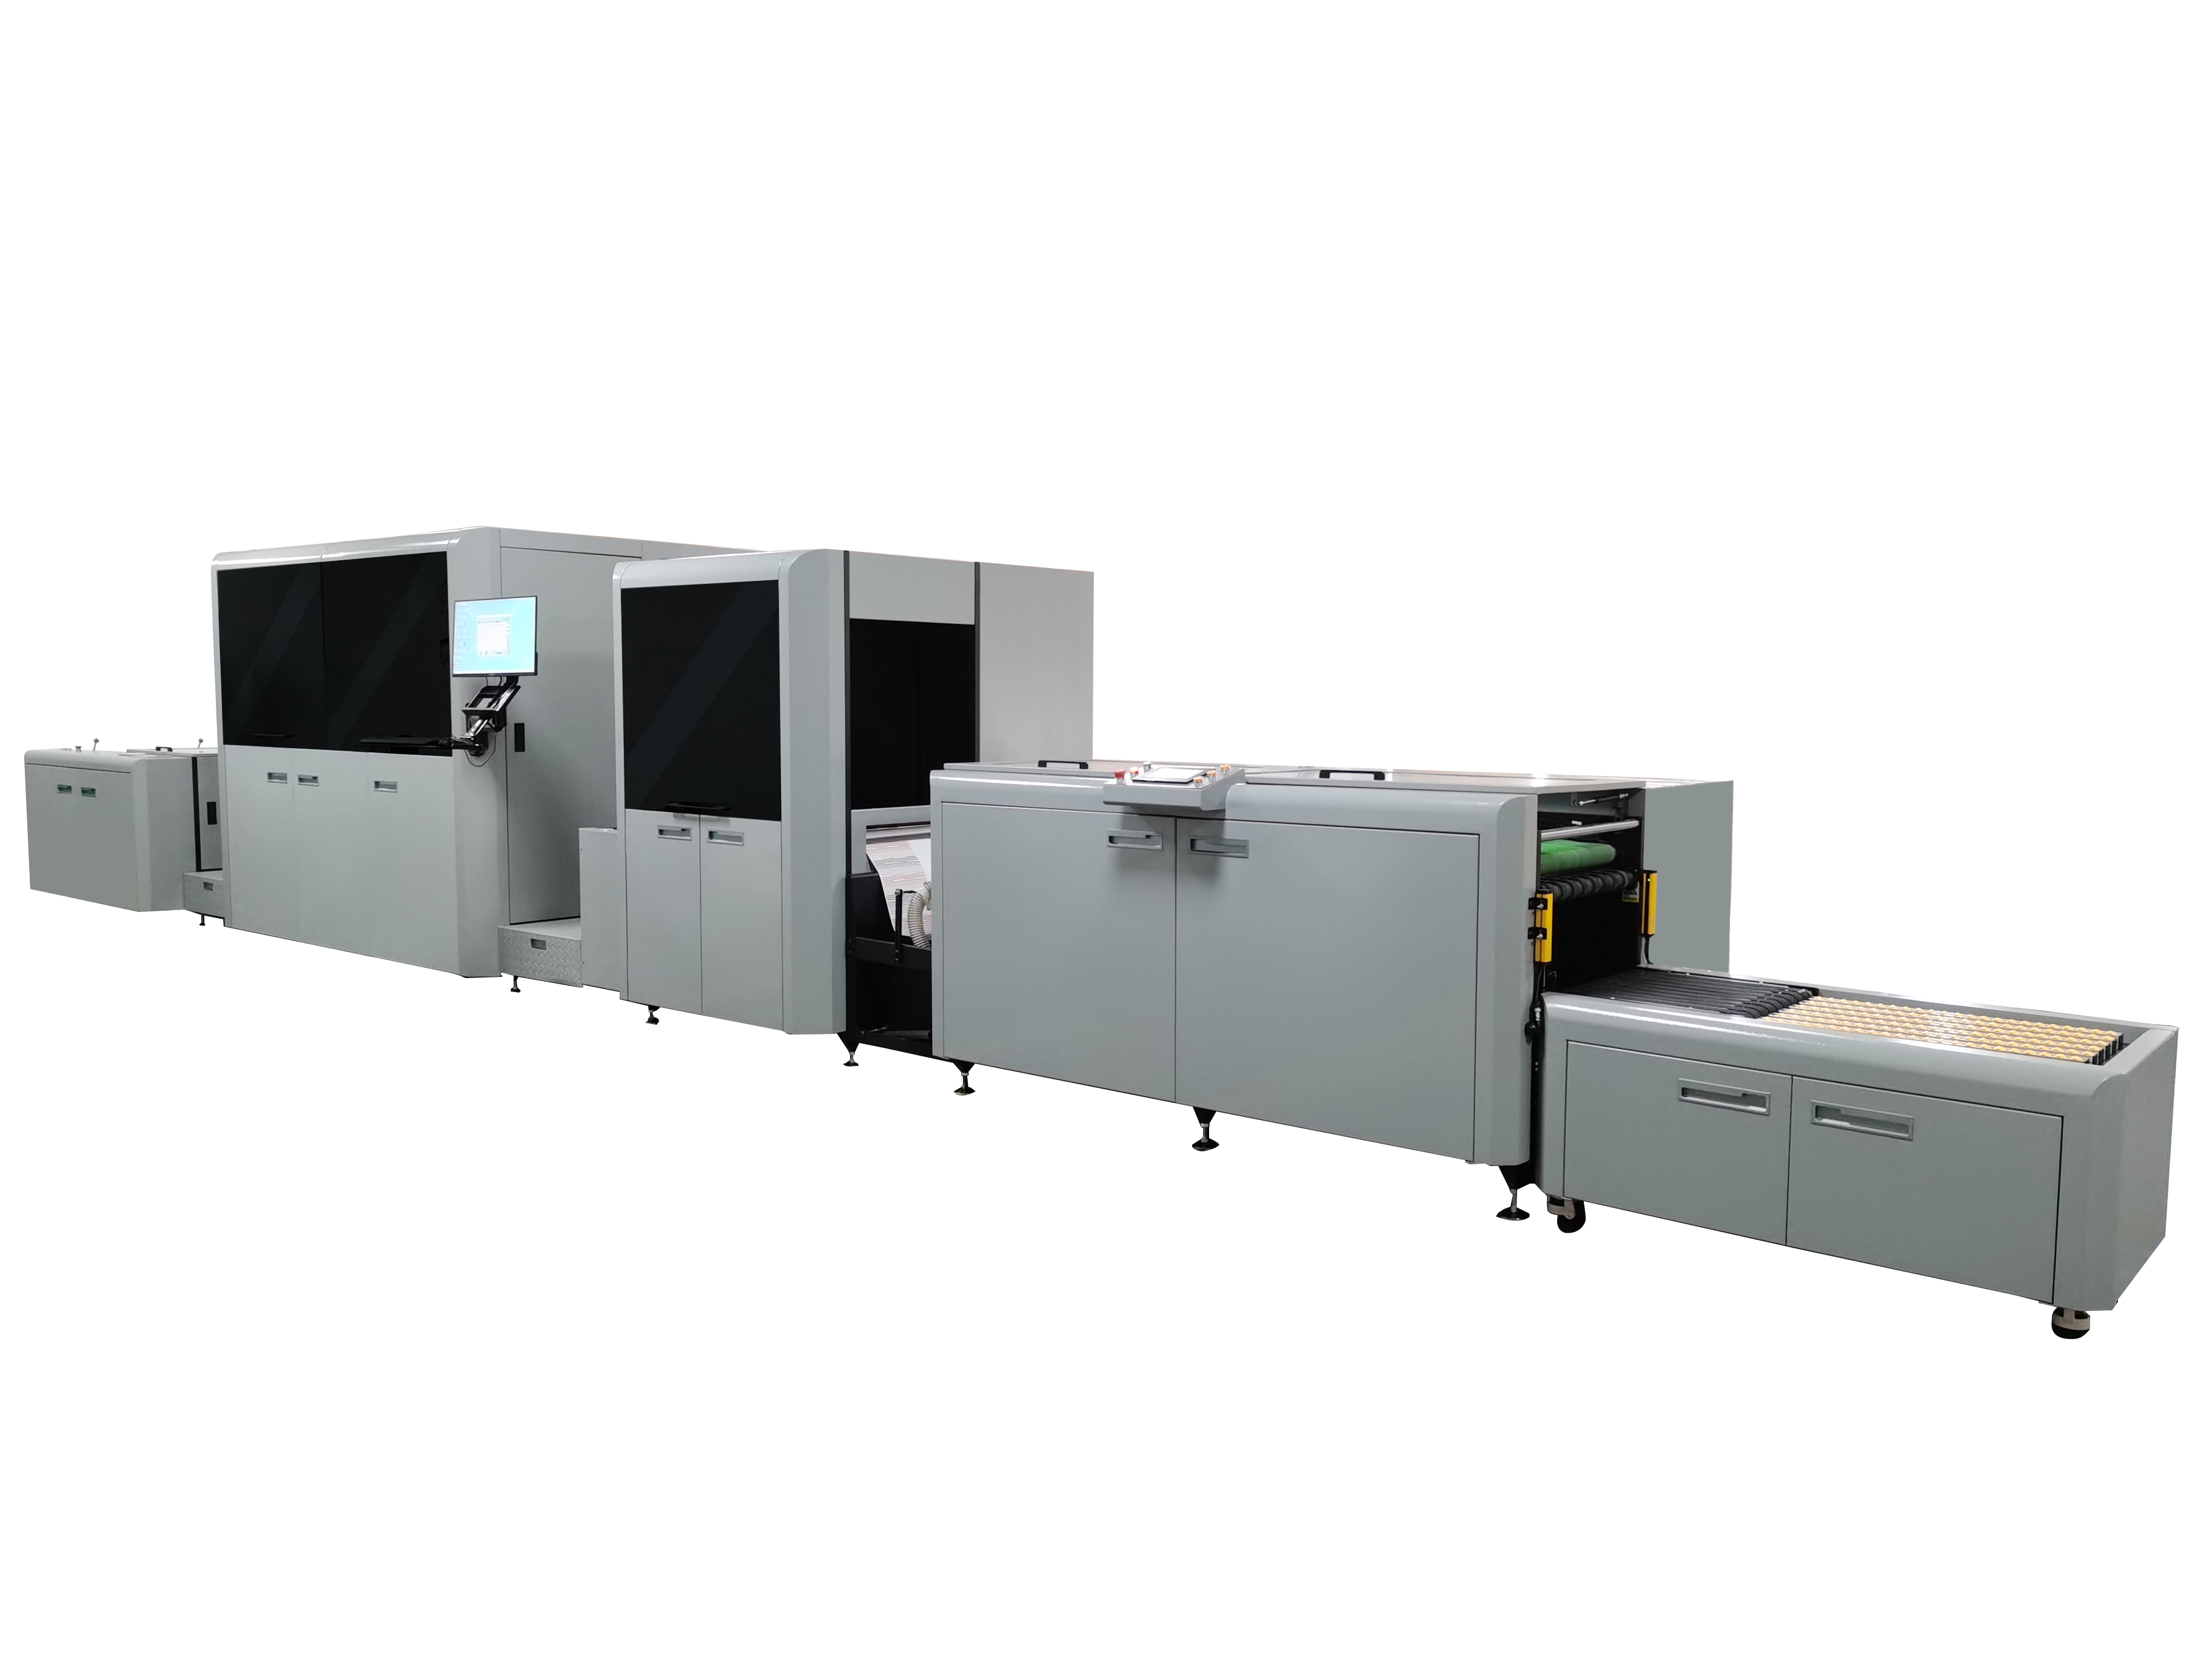 澳门沙金网址js500全新数字印刷解决方案丨新一代双色喷墨轮转数码印刷机DPM440S系列